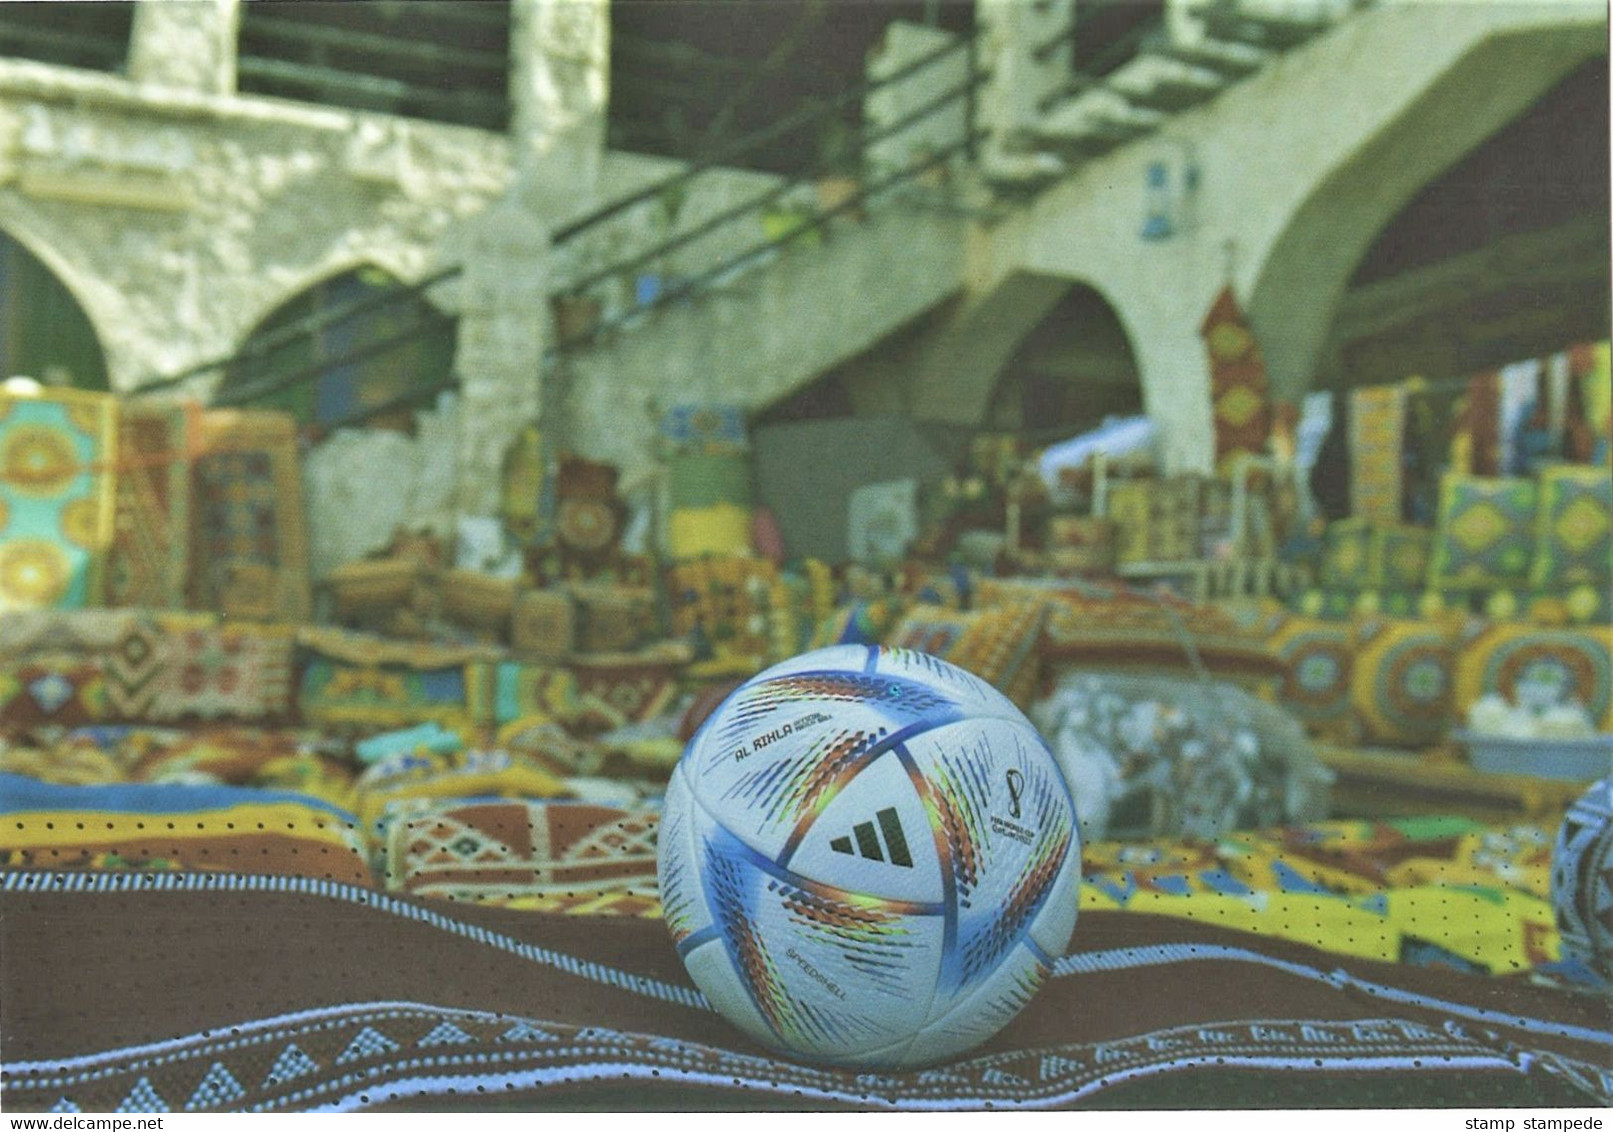 Official Match Ball AL RIHLA By ADIDAS - 2022 FIFA World Cup Soccer / Football - Mint Postcard From Qatar Post - 2022 – Qatar